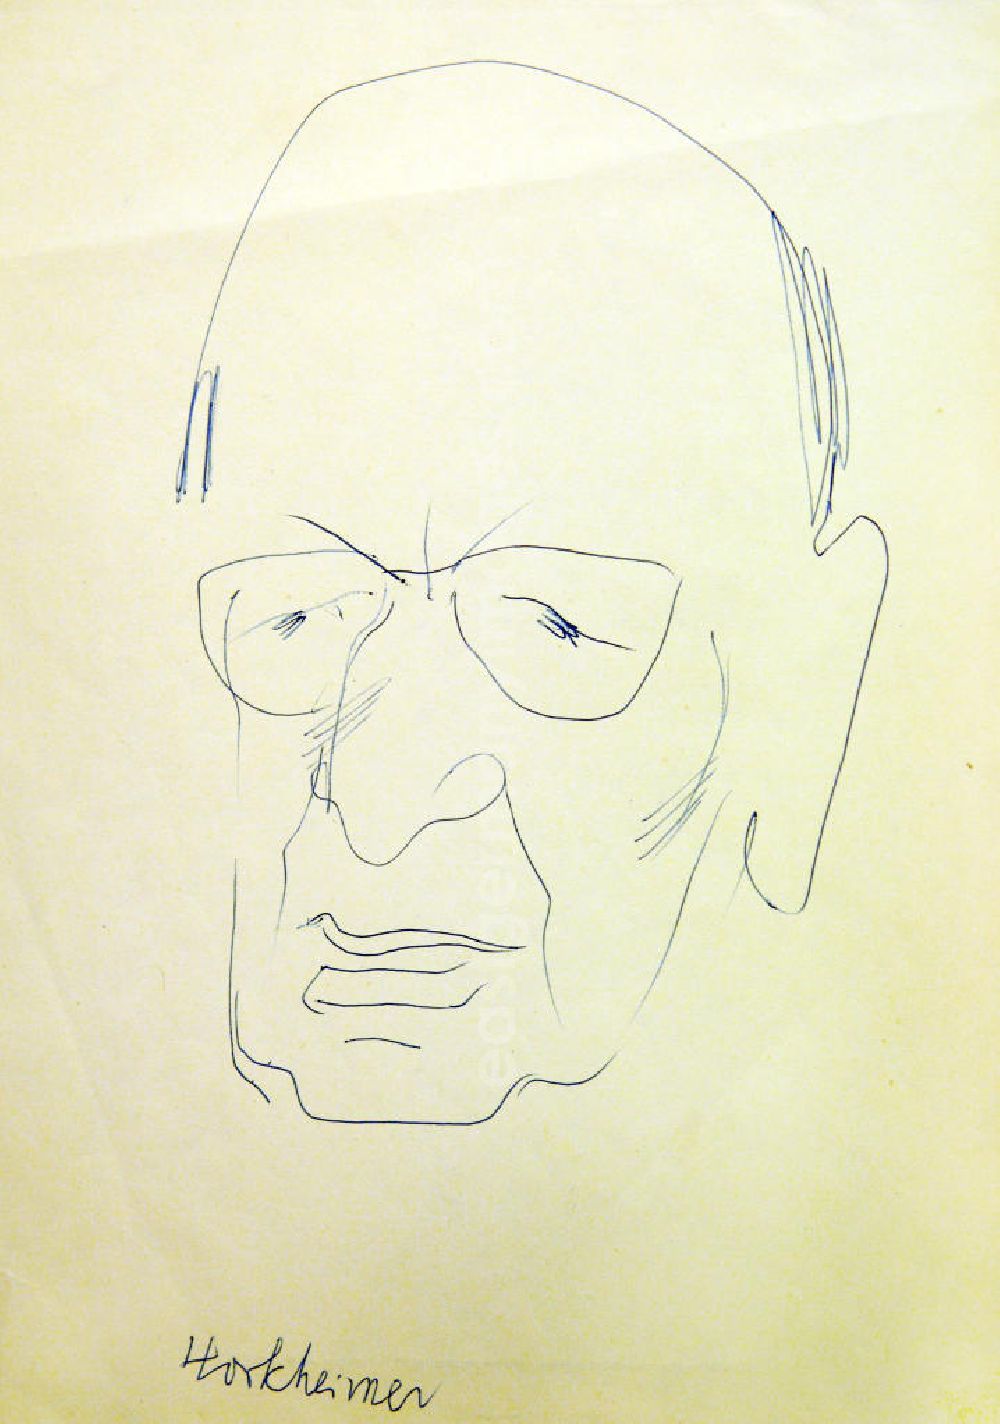 GDR picture archive: Berlin - Skizze von Herbert Sandberg über den deutschen Sozialphilosophen Max Horkheimer (*14.02.1895 †07.07.1973) Horkheimer 15,0x22,